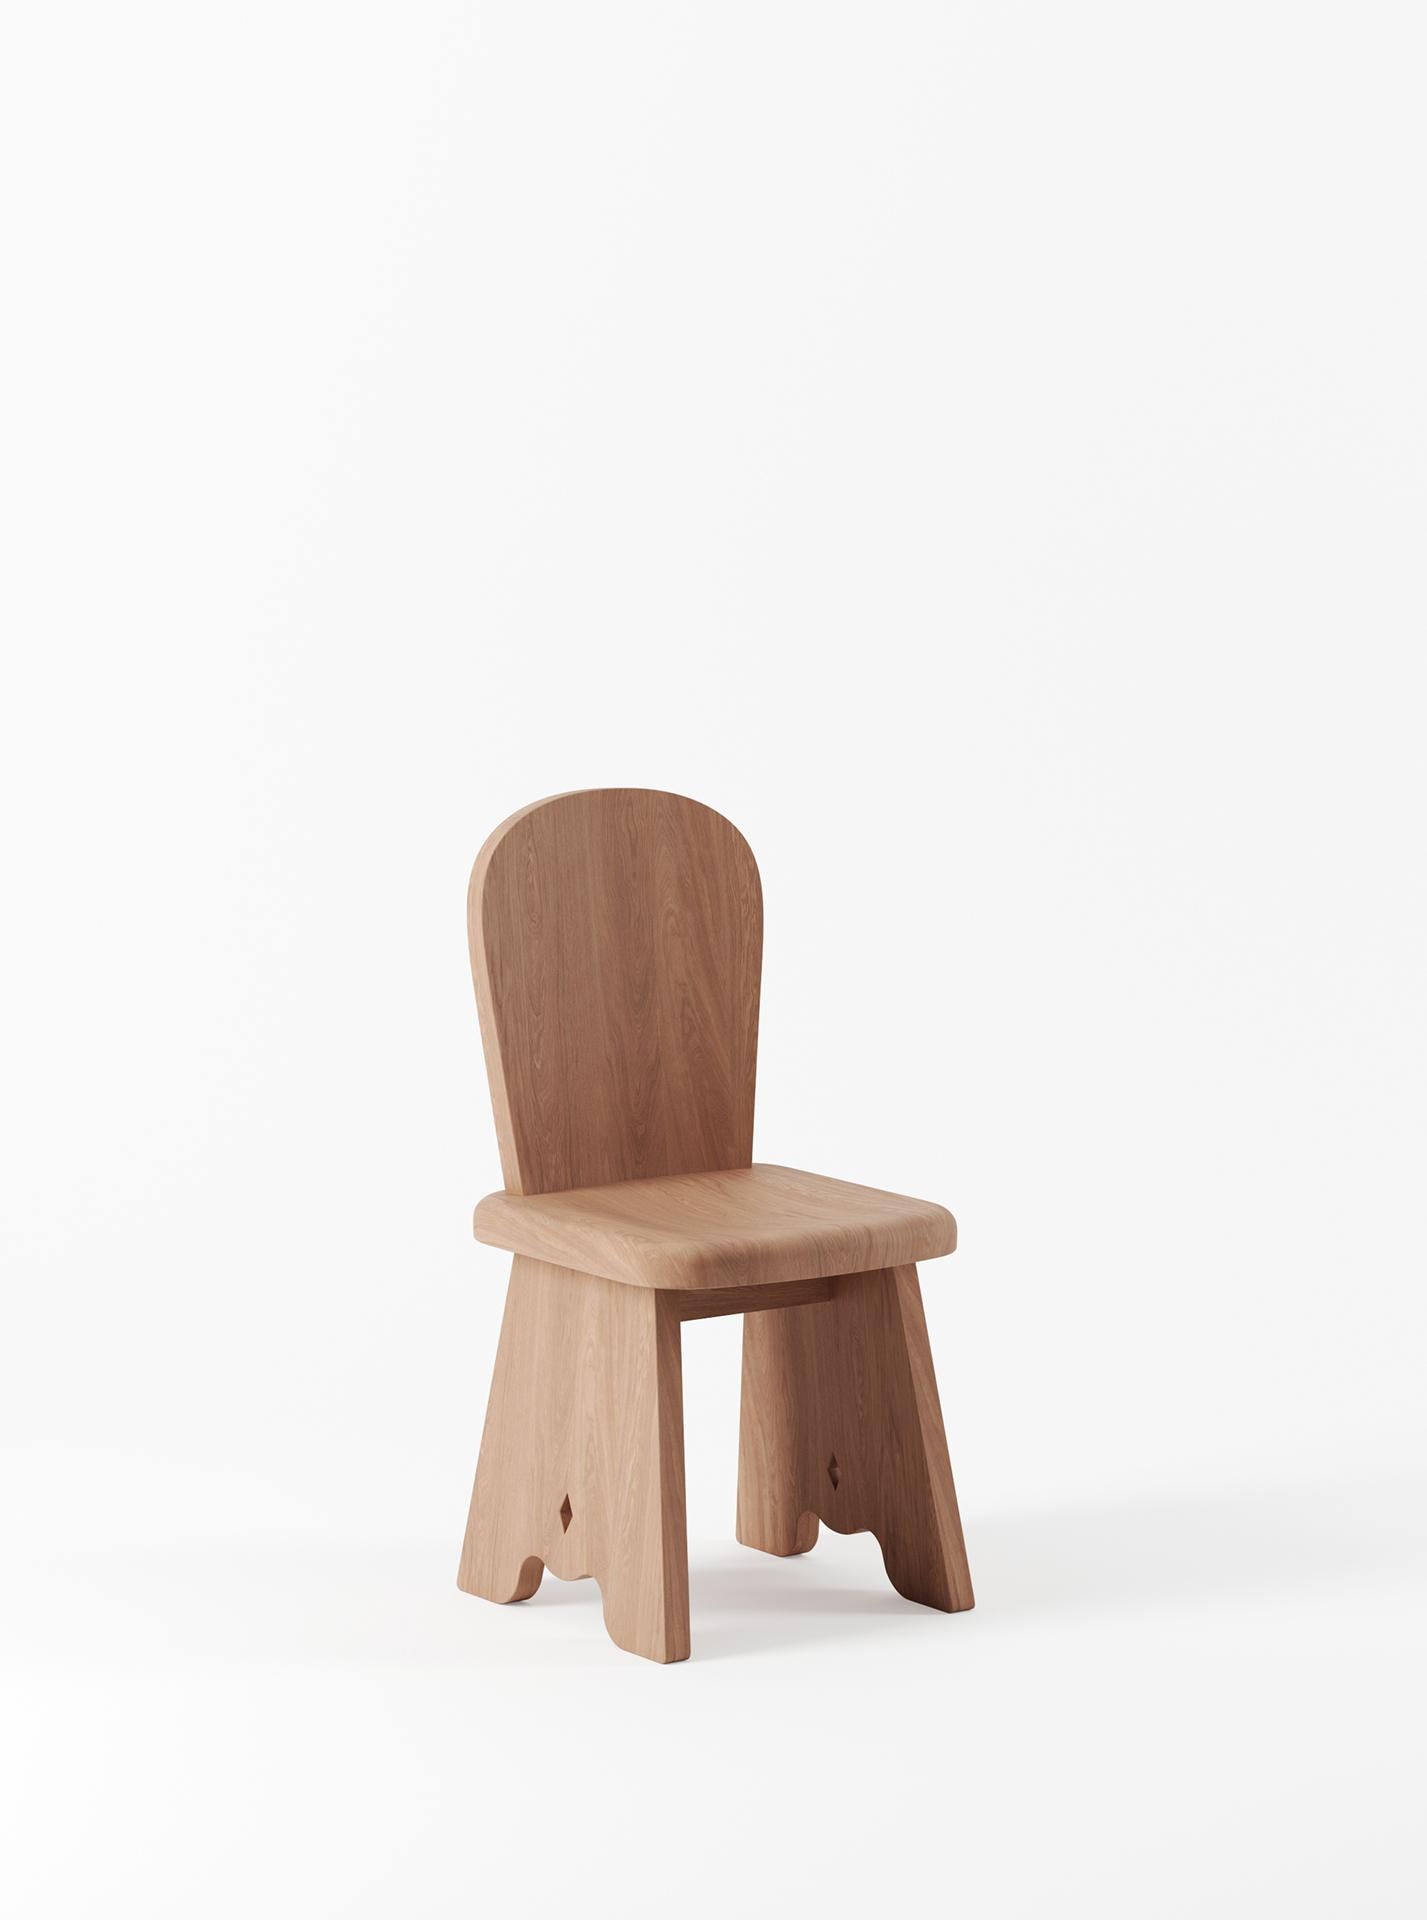 Der Rambling Chair von Yaniv Chen ist eine Anspielung auf die Silhouette des traditionellen Milchhockers, wie man ihn auf Farmen und viktorianischen Gehöften in Südafrika findet. Für Chen ist der Hocker gleichbedeutend mit Kindheitserinnerungen an